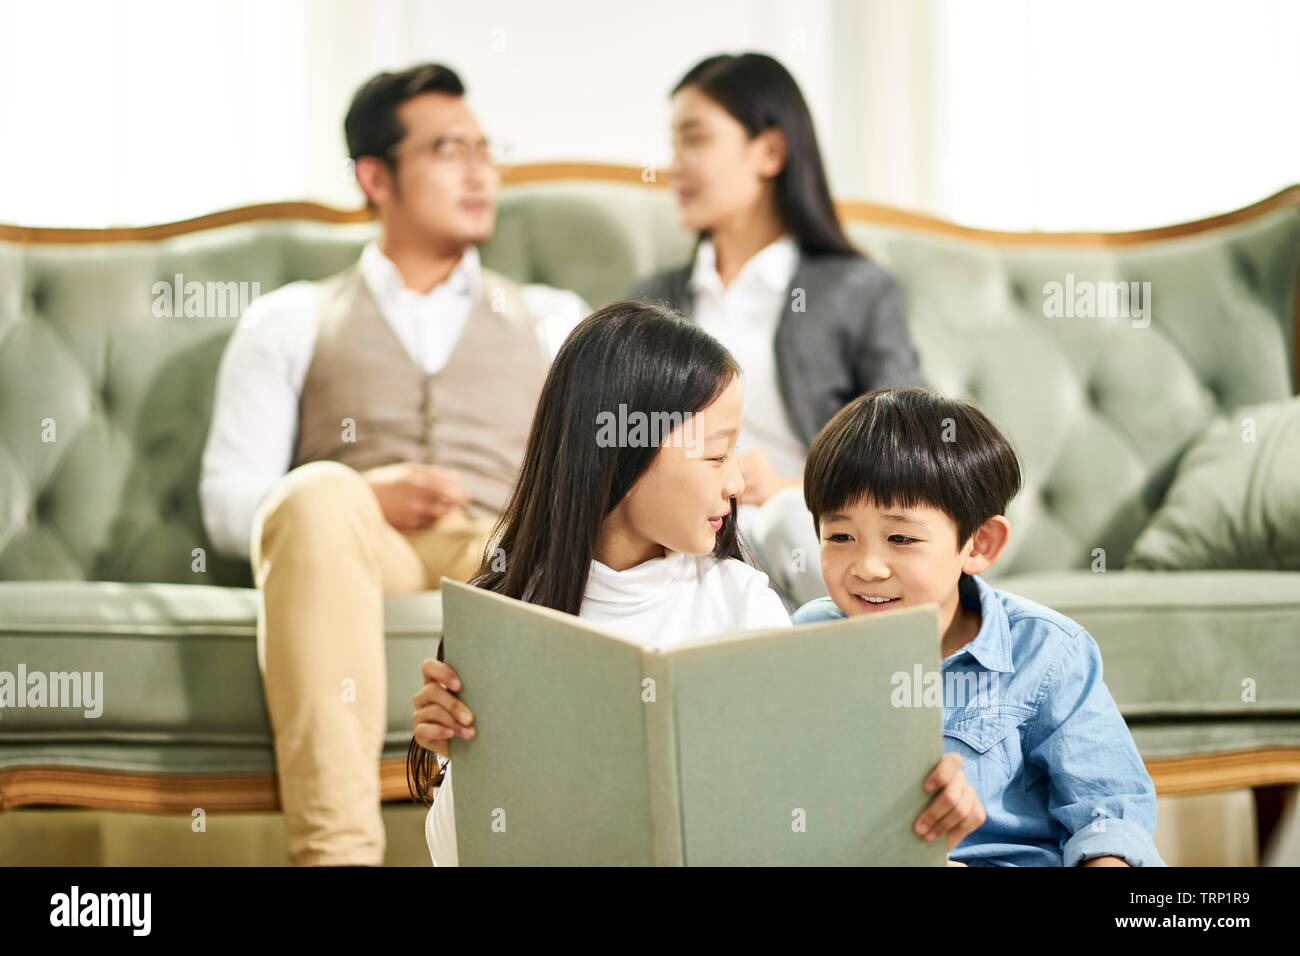 Asiatische Bruder und Schwester auf dem Teppich in der Familie Wohnzimmer Buch zusammen sitzen, während sich die Eltern im Hintergrund. Stockfoto